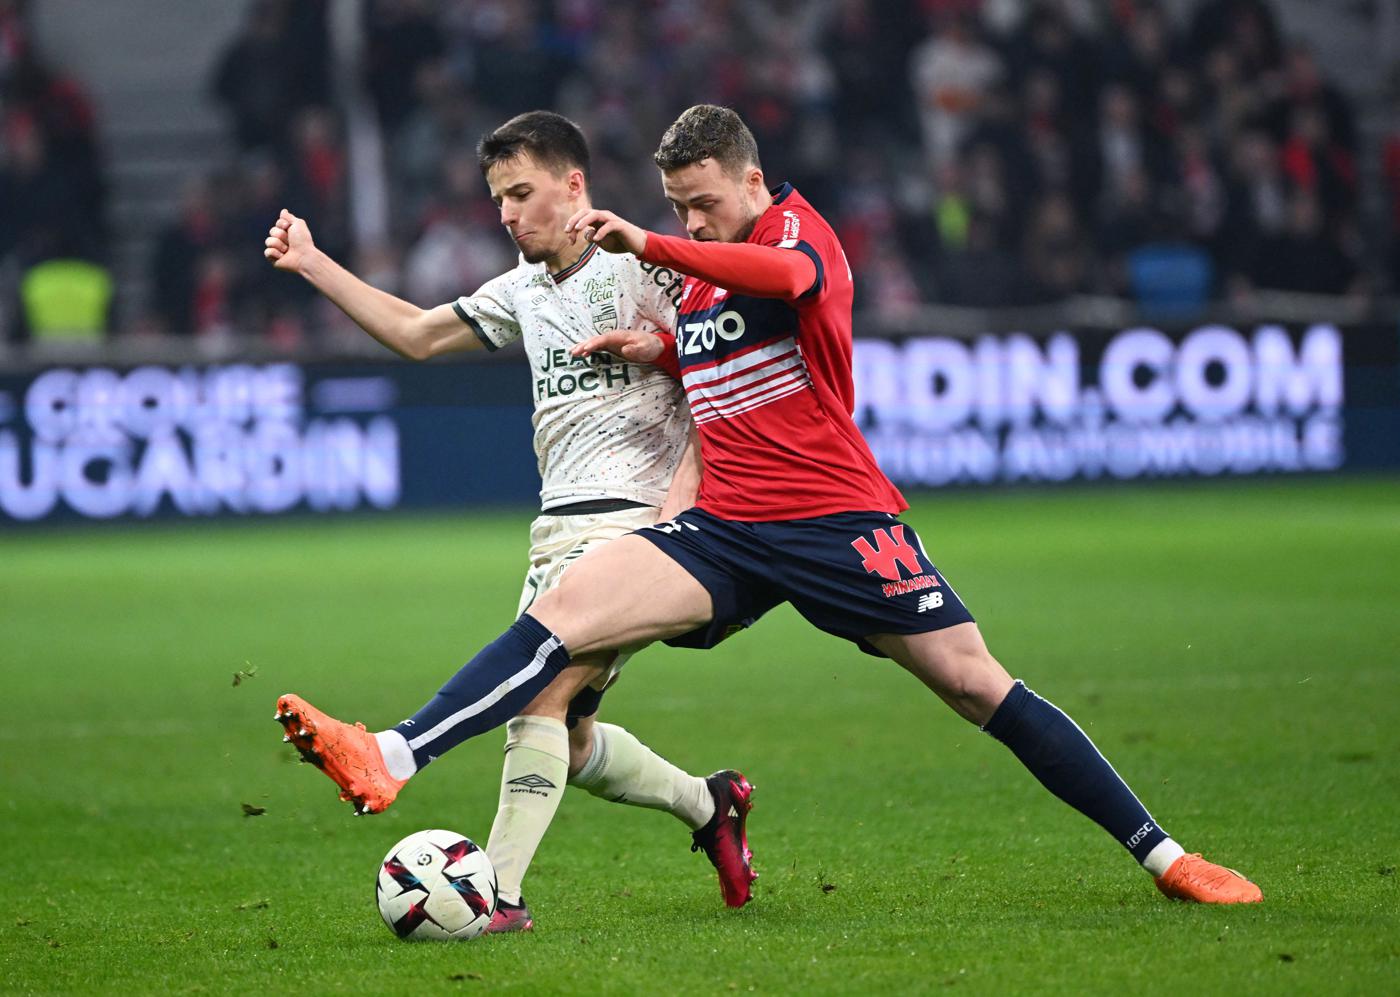 Lille - Lorient - 3:1. Mistrzostwa Francji, 29. runda. Przegląd meczu, statystyki